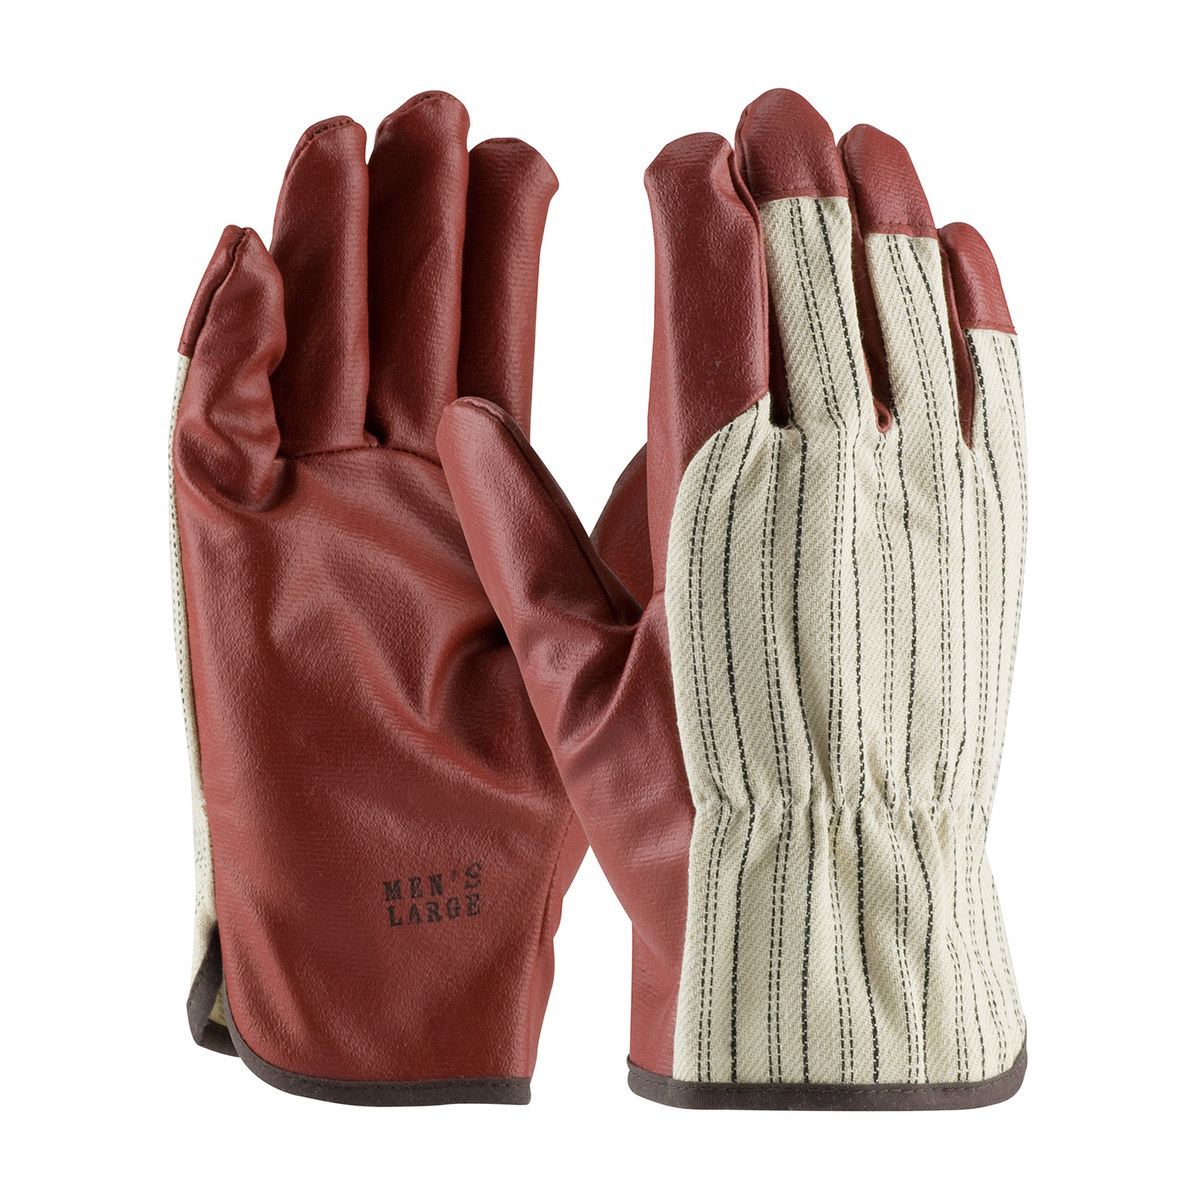 brown cotton work gloves